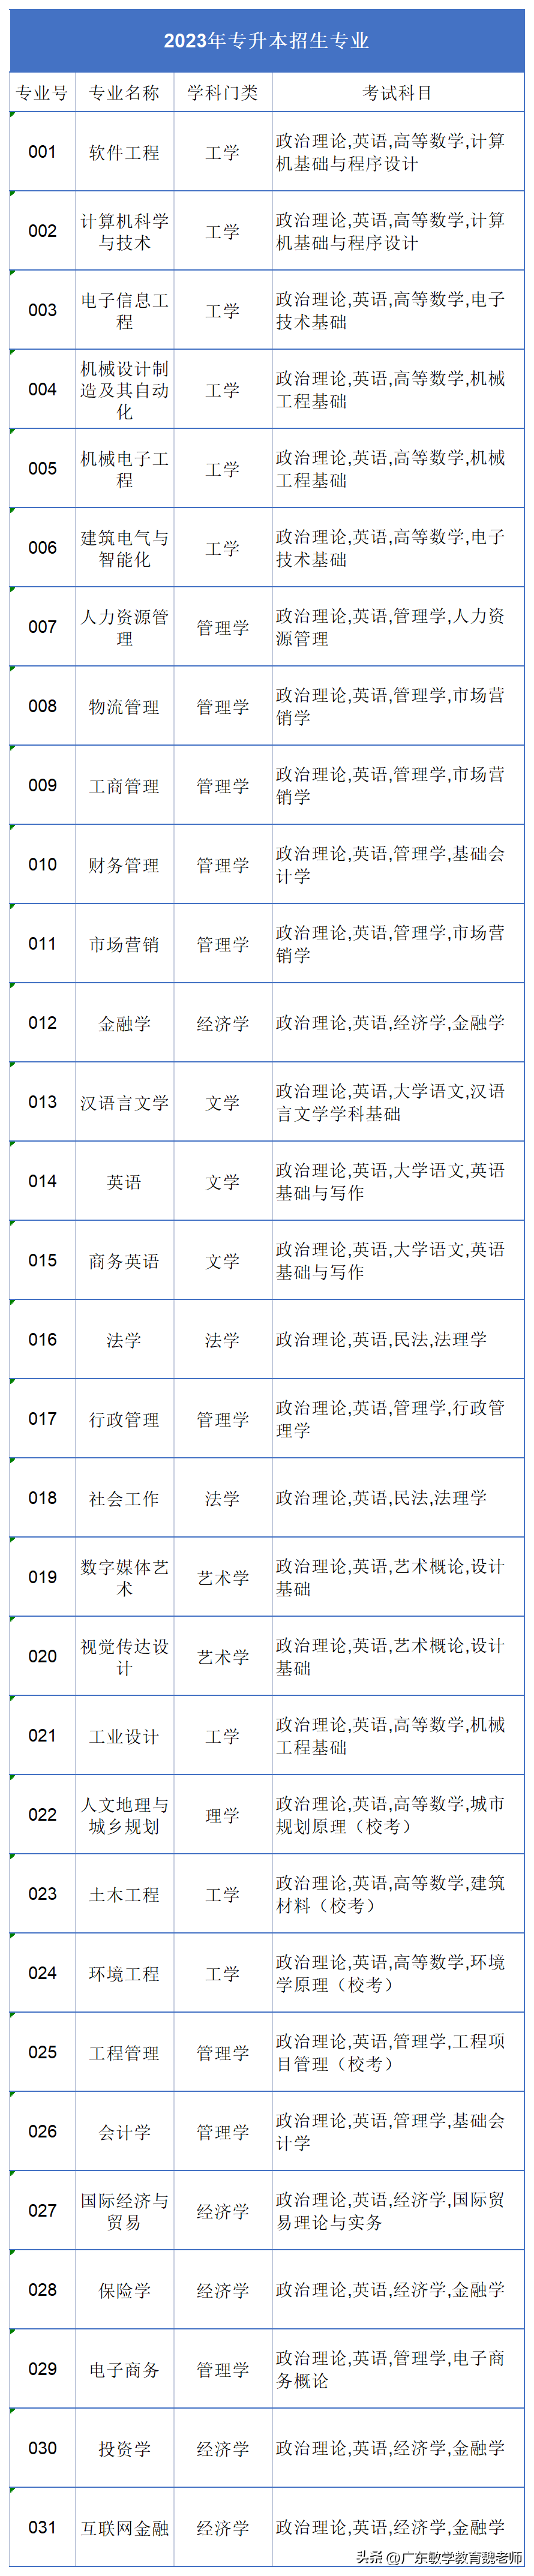 广州的英语学校_广州英语学校有哪些_广州英语学校排名